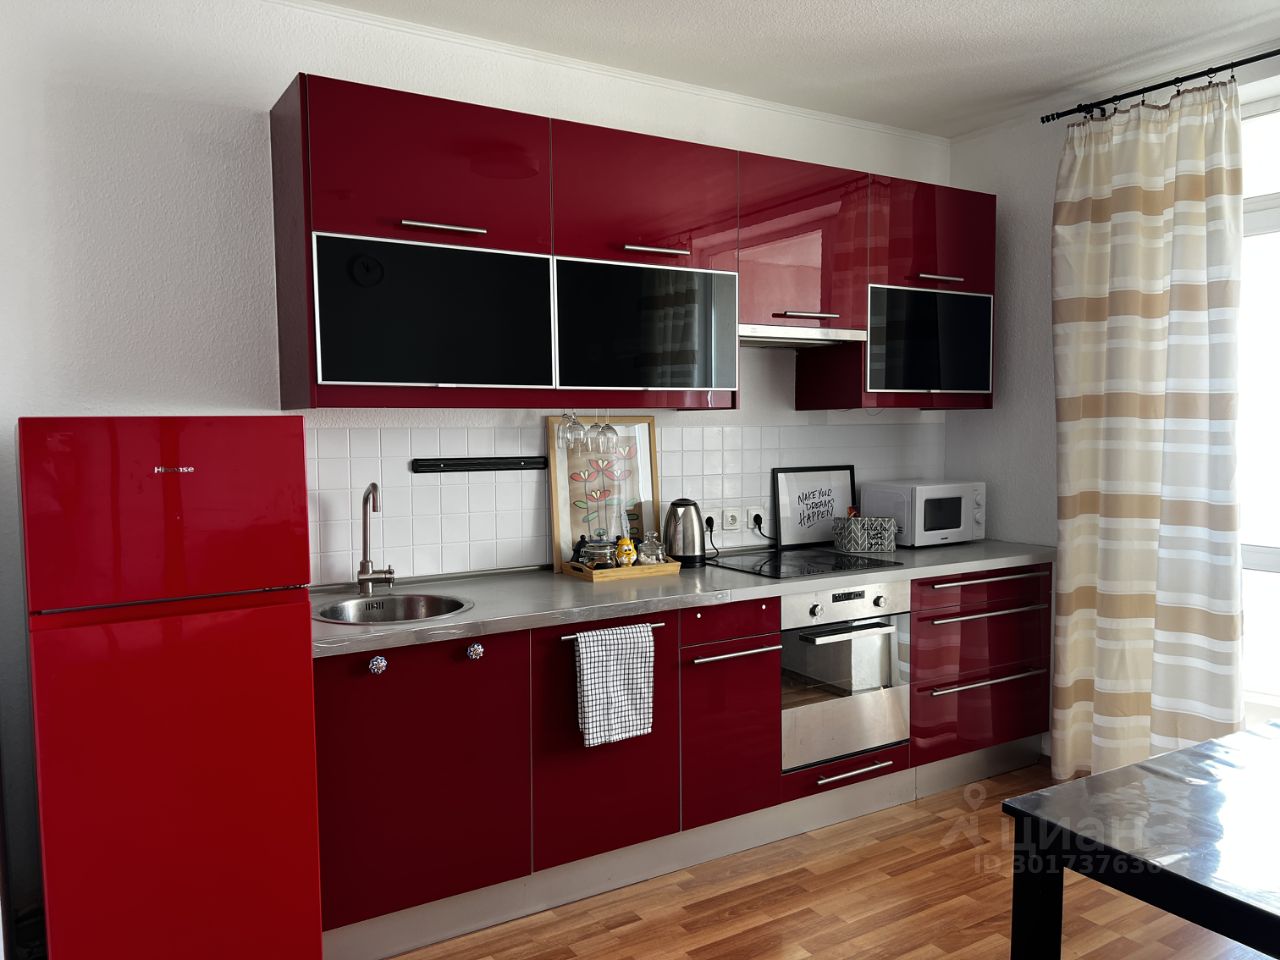 Современная кухня с яркими красными фасадами, встроенной техникой и обеденной зоной. Светлое помещение, уютная атмосфера.